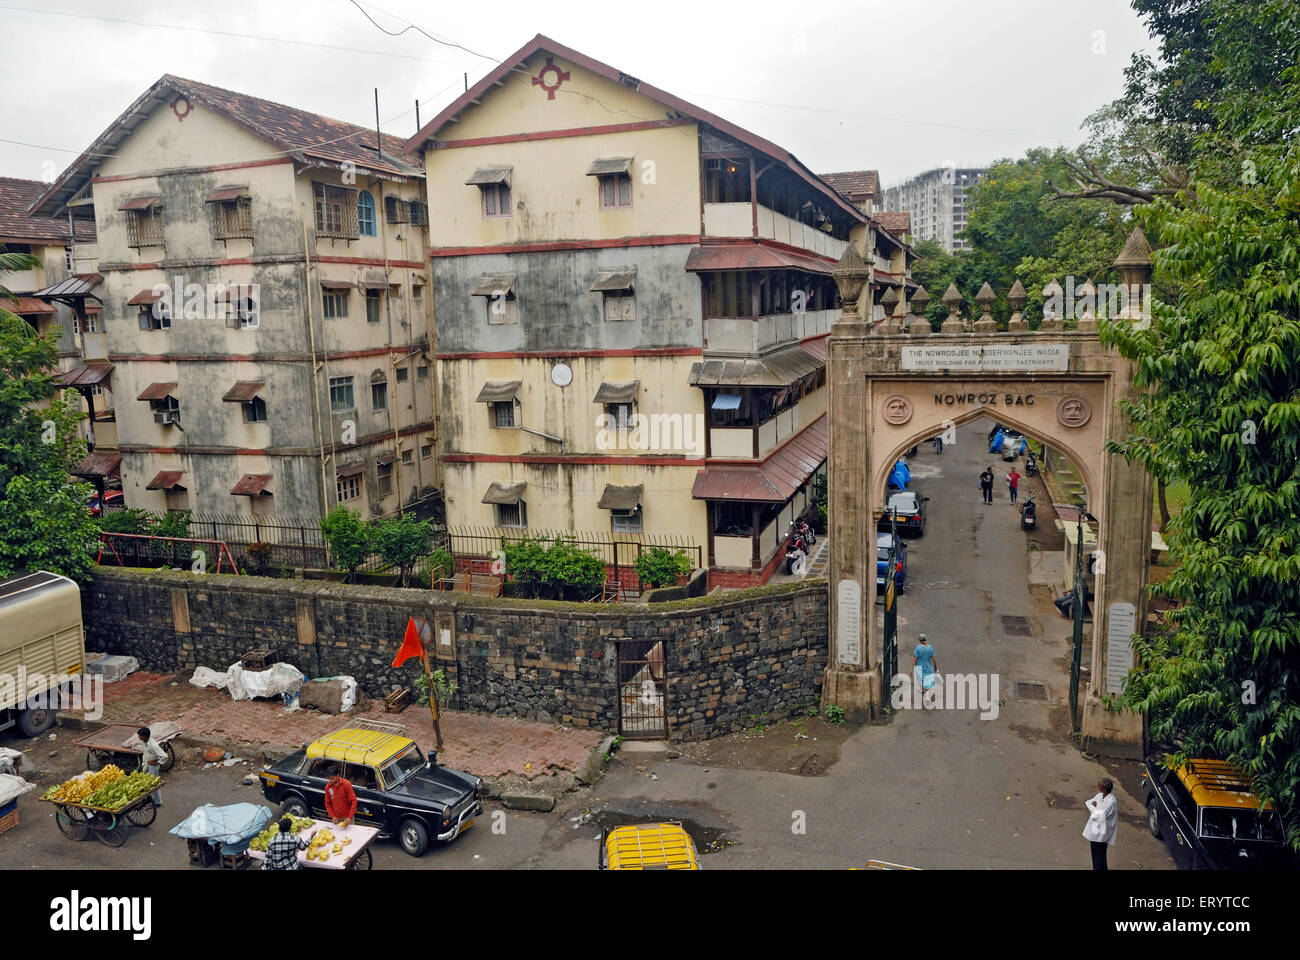 Nowroz  baug oldest parsi housing complex Bombay Mumbai ; Maharashtra ; India Stock Photo